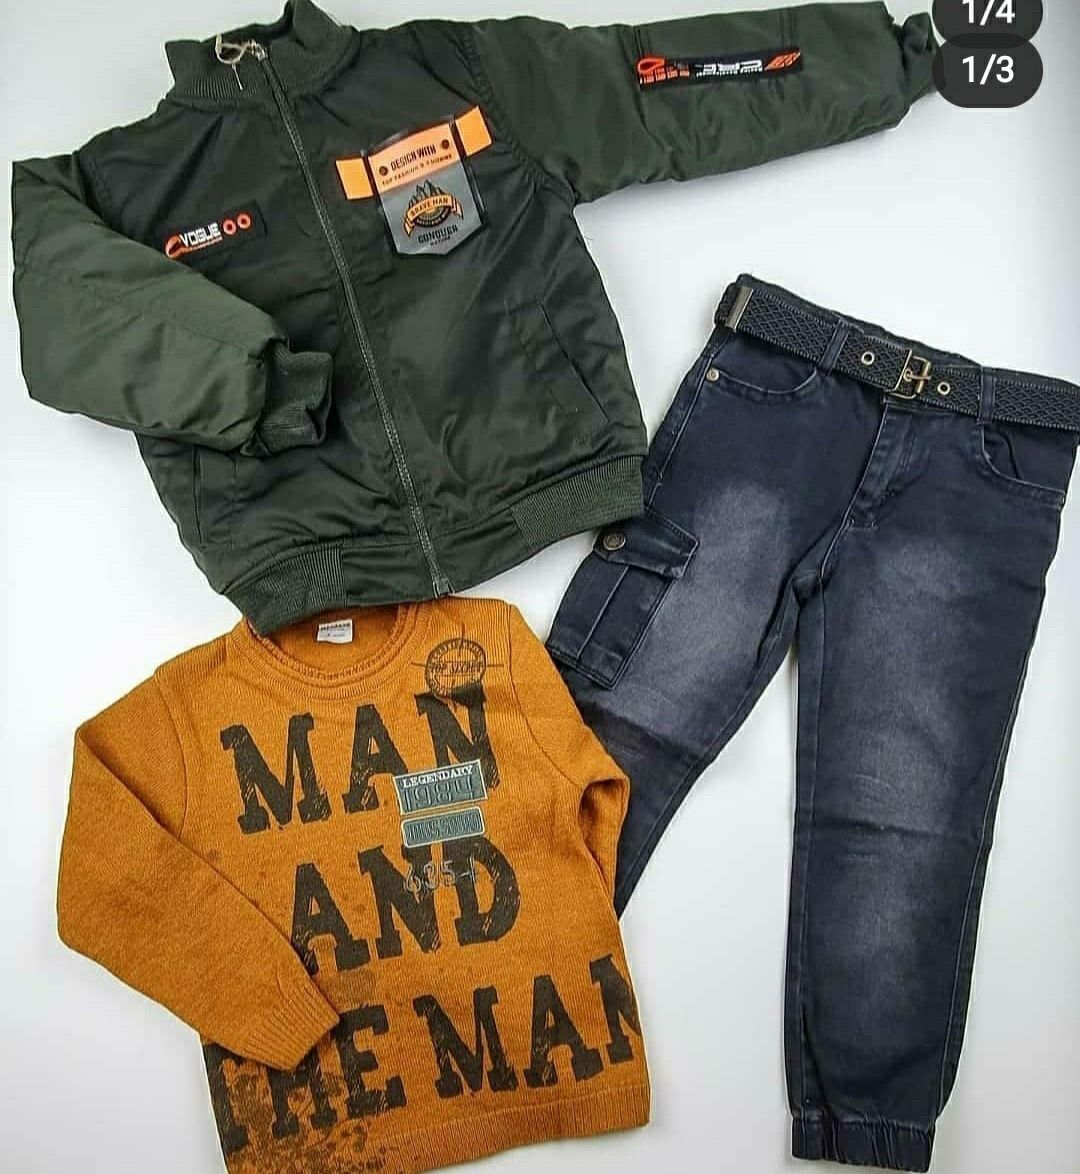 Тройка весна комплекты (куртка, джинсы, пуловер) для мальчиков ТУРЦИЯ